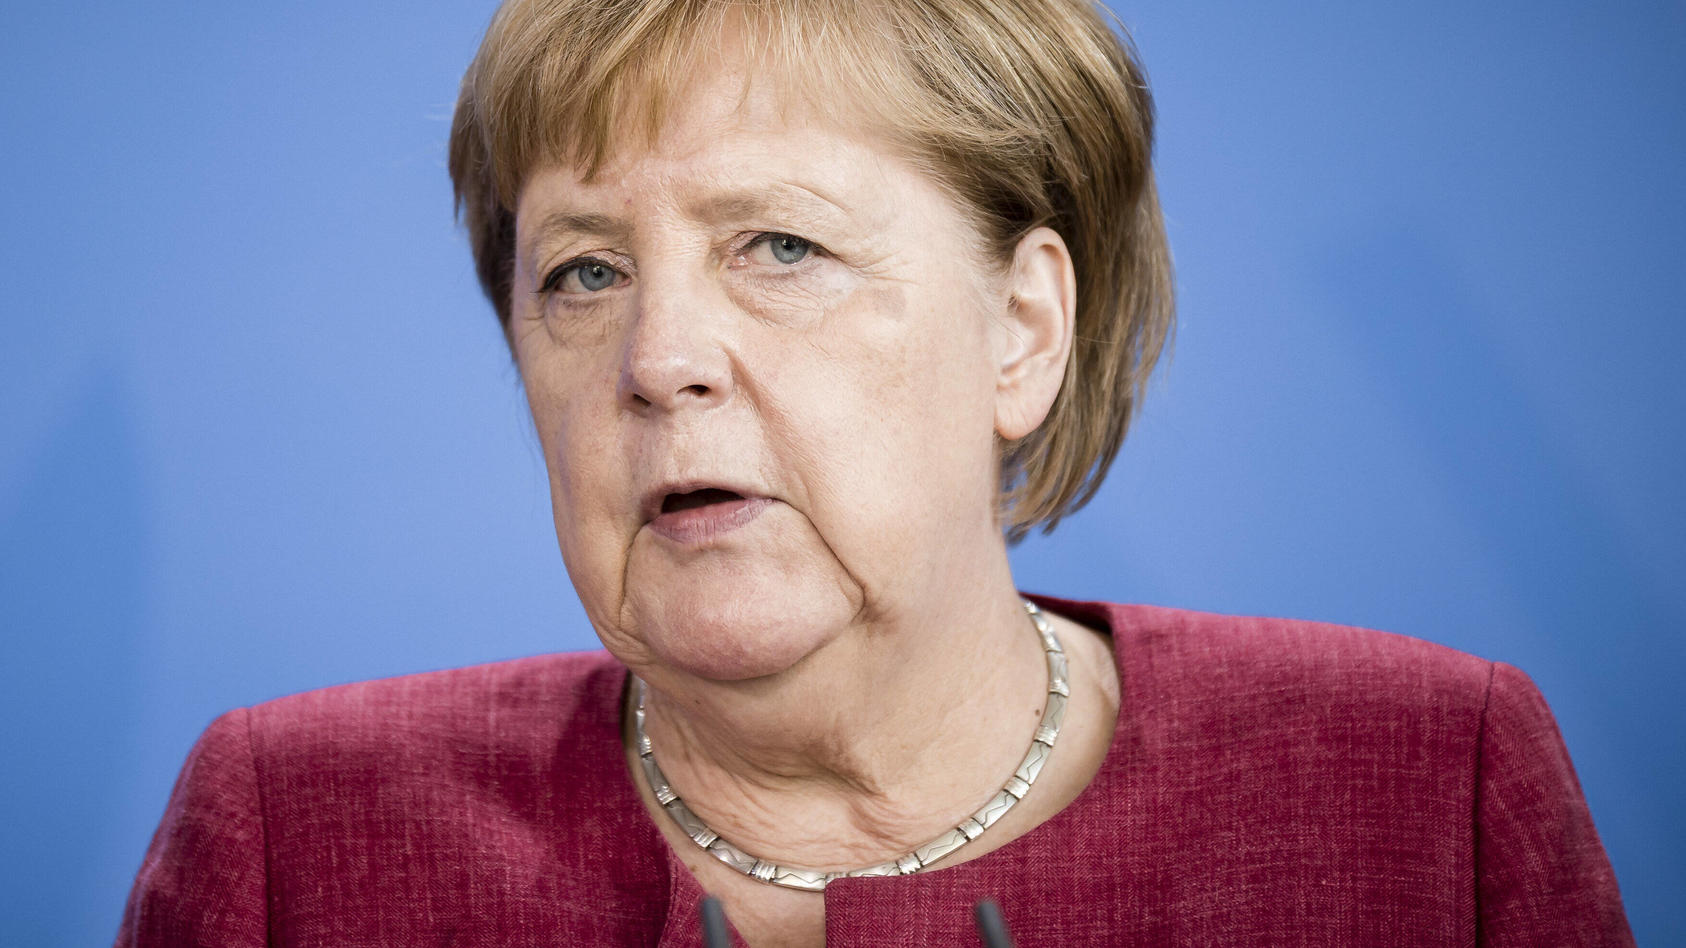 Bundeskanzlerin Angela Merkel spricht heute in der Bundestagsdebatte zur Lage in Deutschland